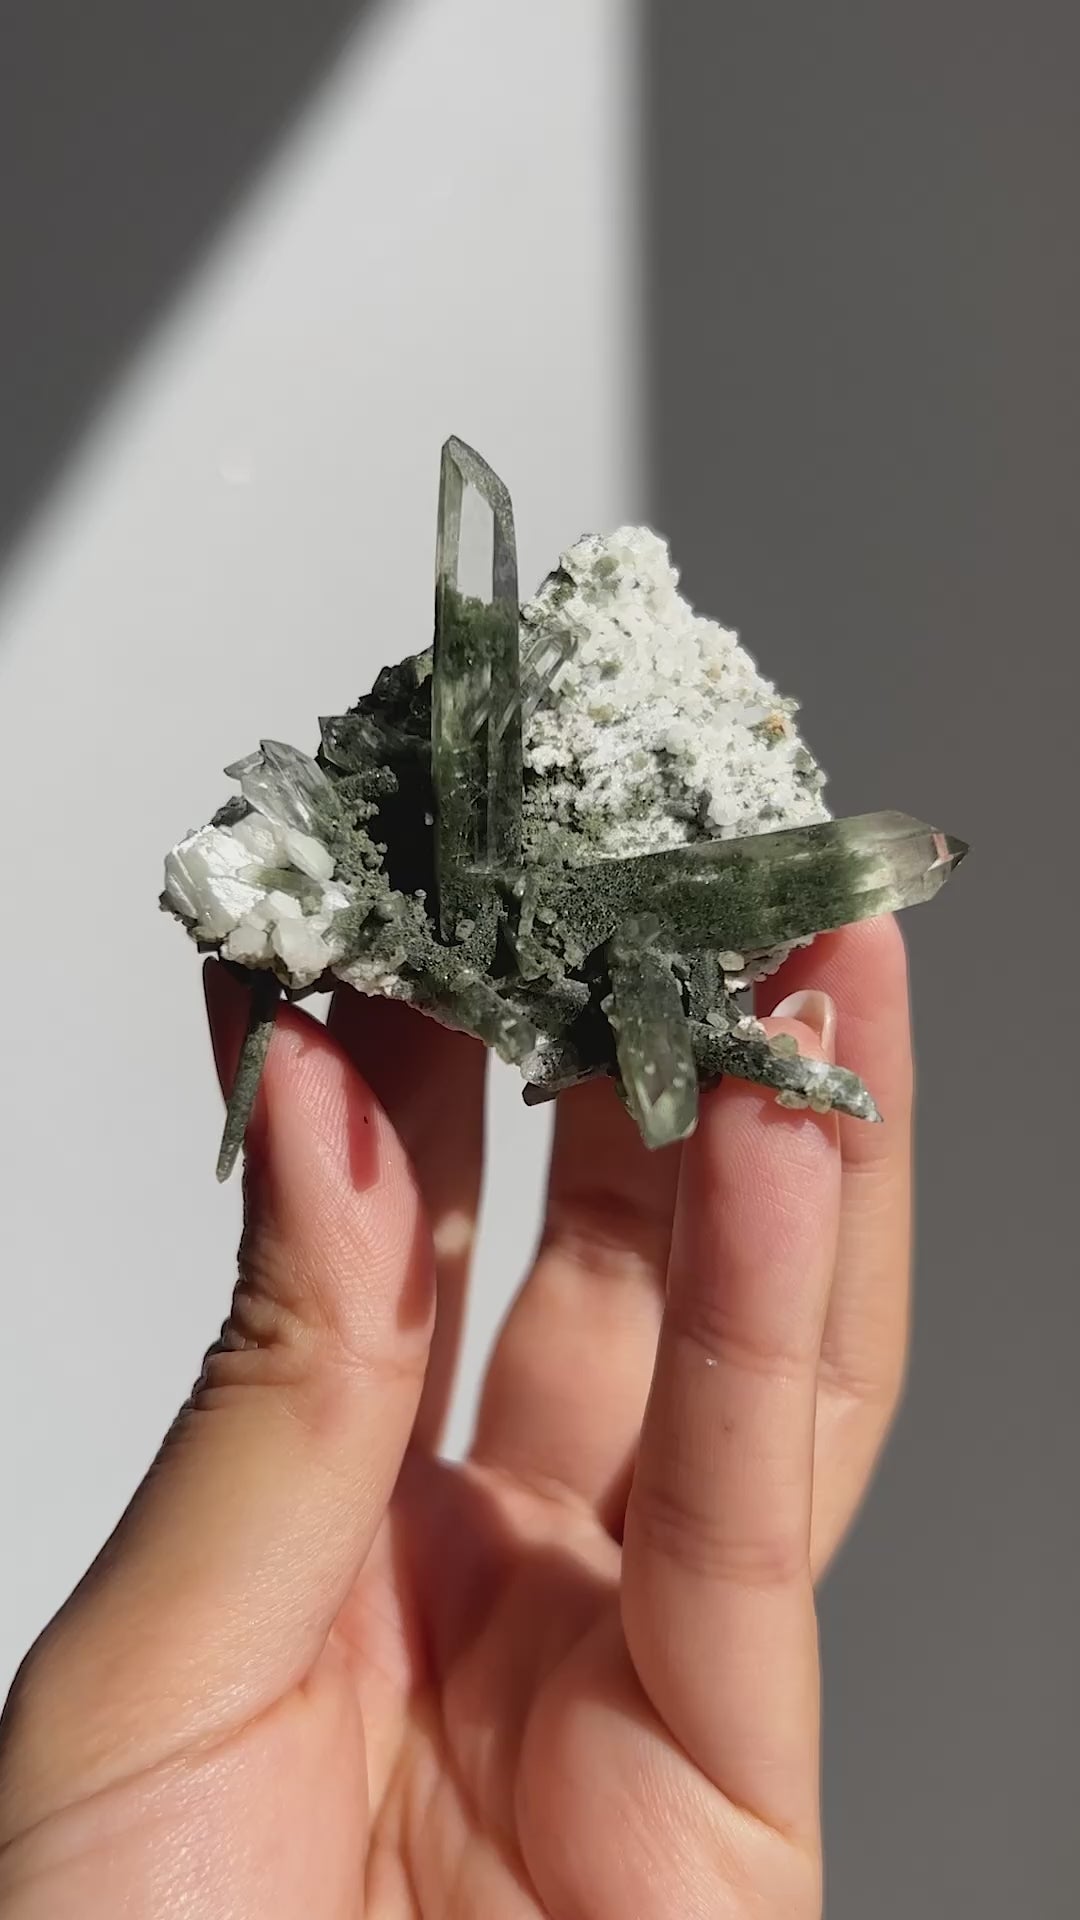 [ガネーシュヒマール産] クローライト水晶 ~Ganesh Himal Chlorite 